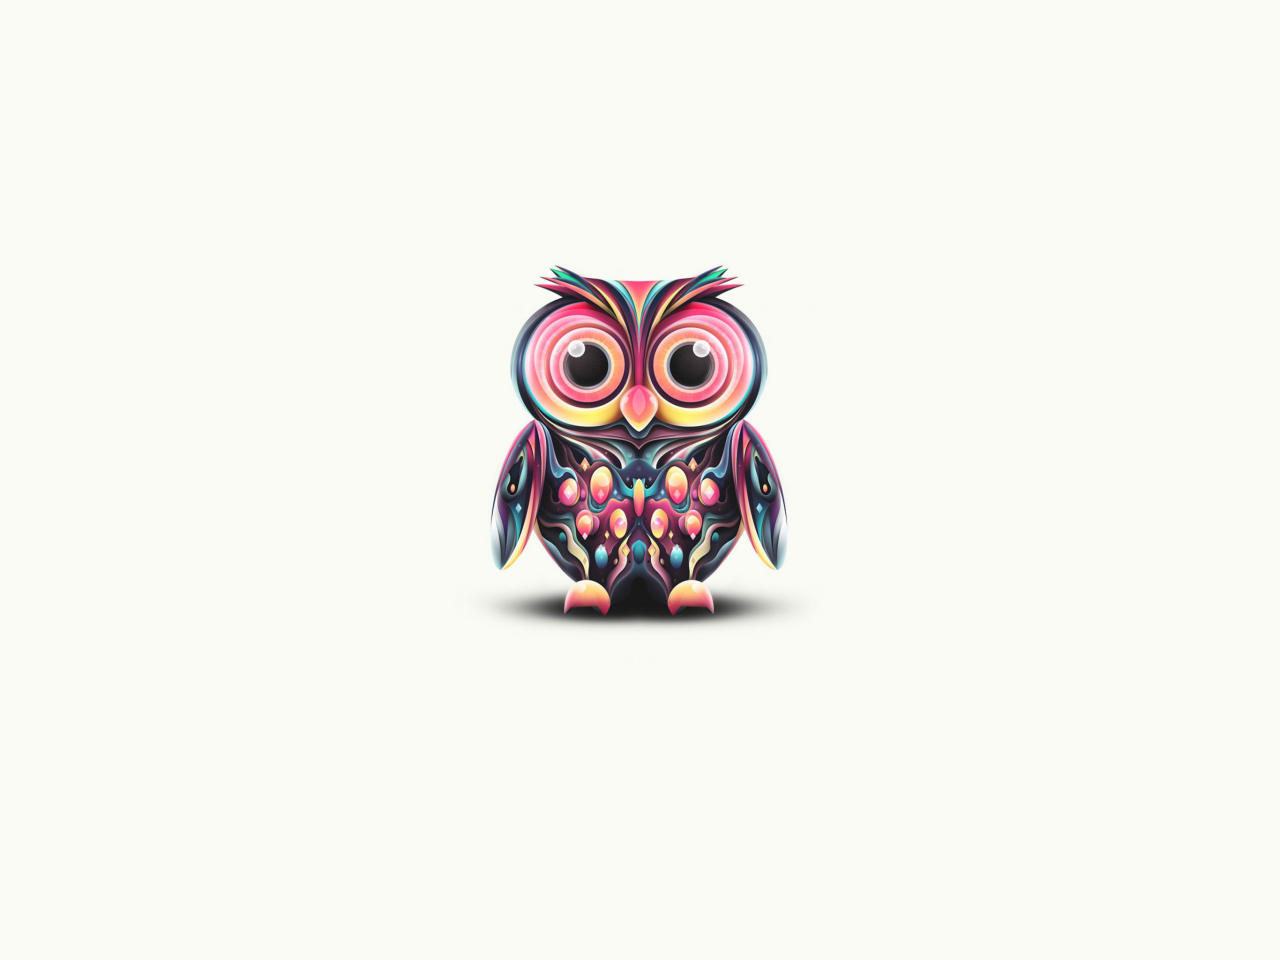 Sfondi Owl Illustration 1280x960